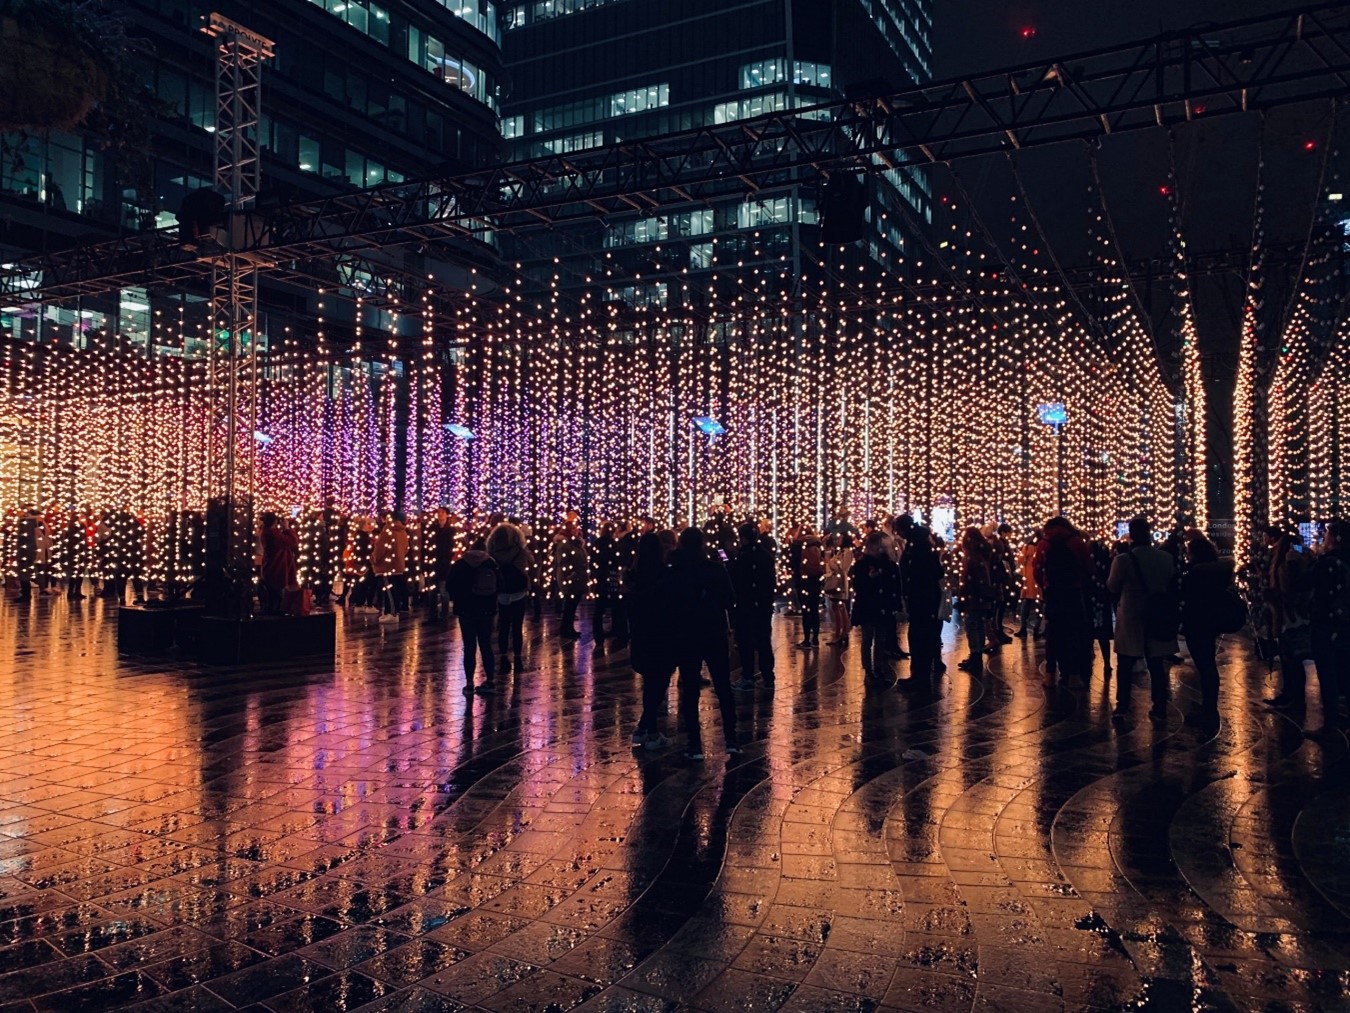 Imagem mostra pessoas em um ambiente com luzes de led